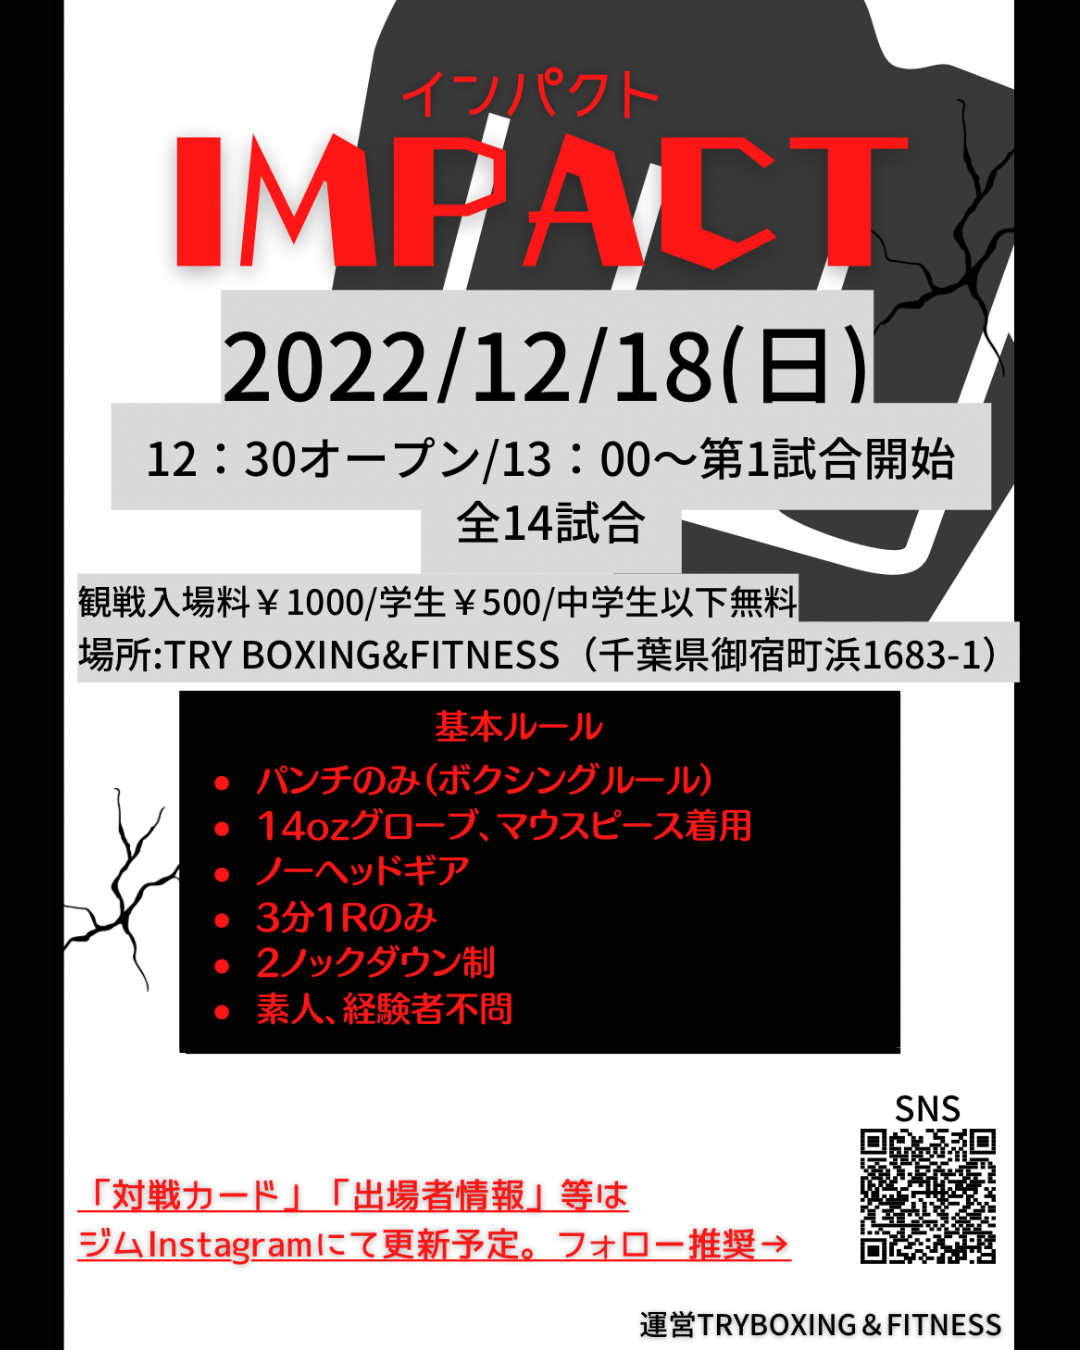 12/18ジム大会【IMPACT】開催